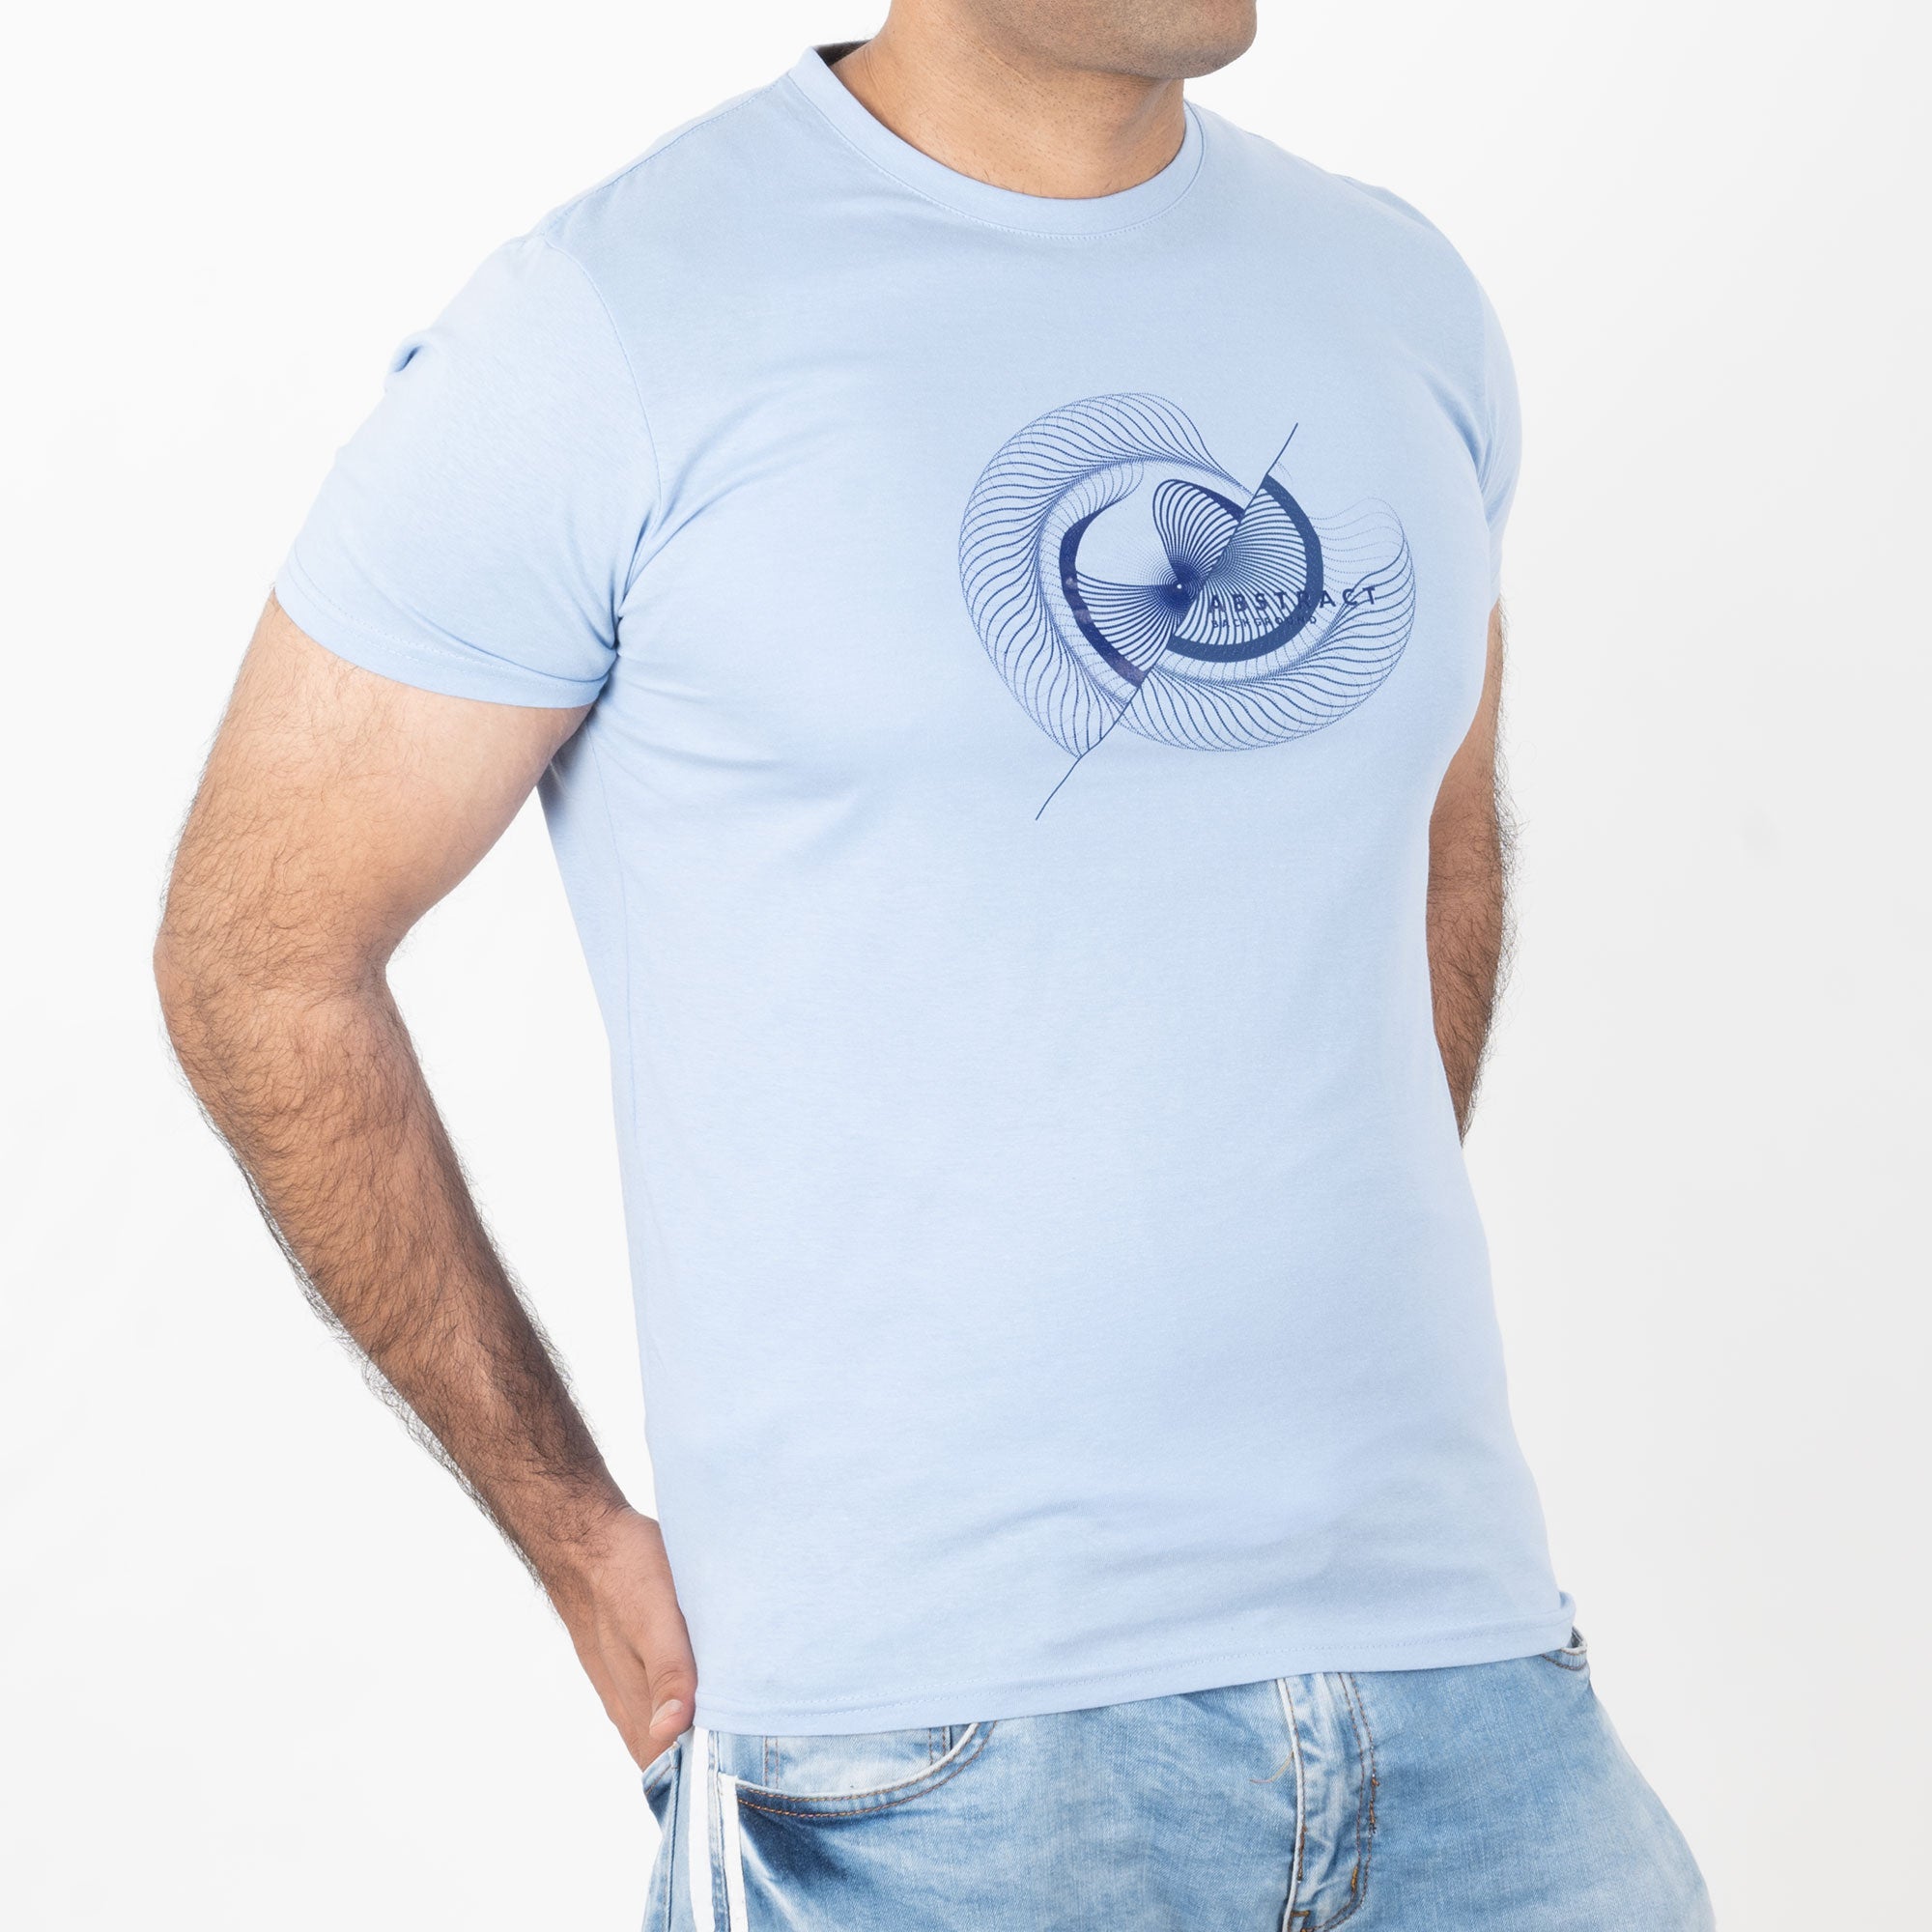 Milano Bulls - Abstract Printed T-Shirt